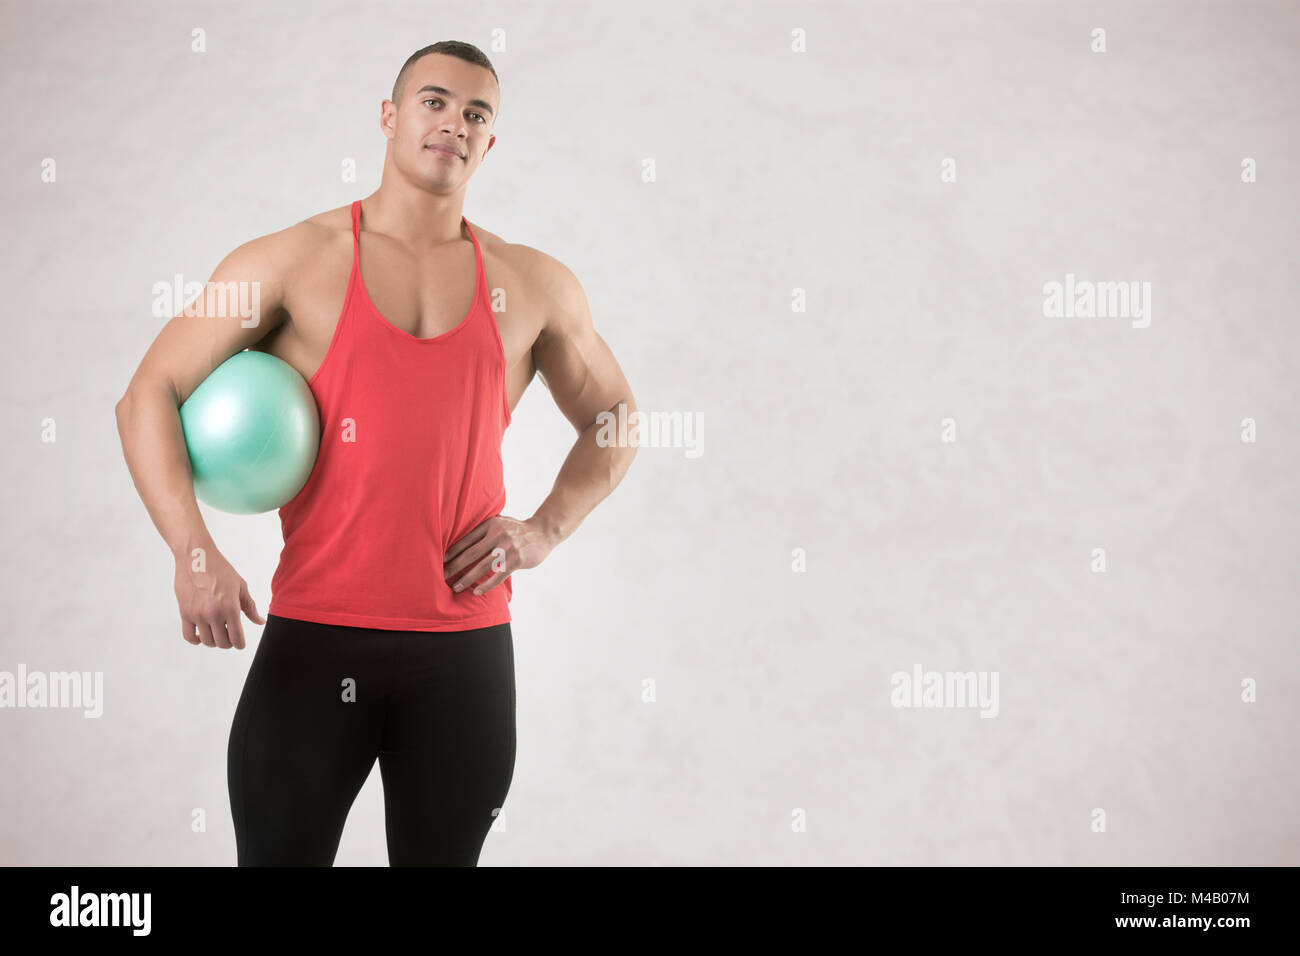 Colocar Hombre de pie sosteniendo un balón de Pilates Foto de stock